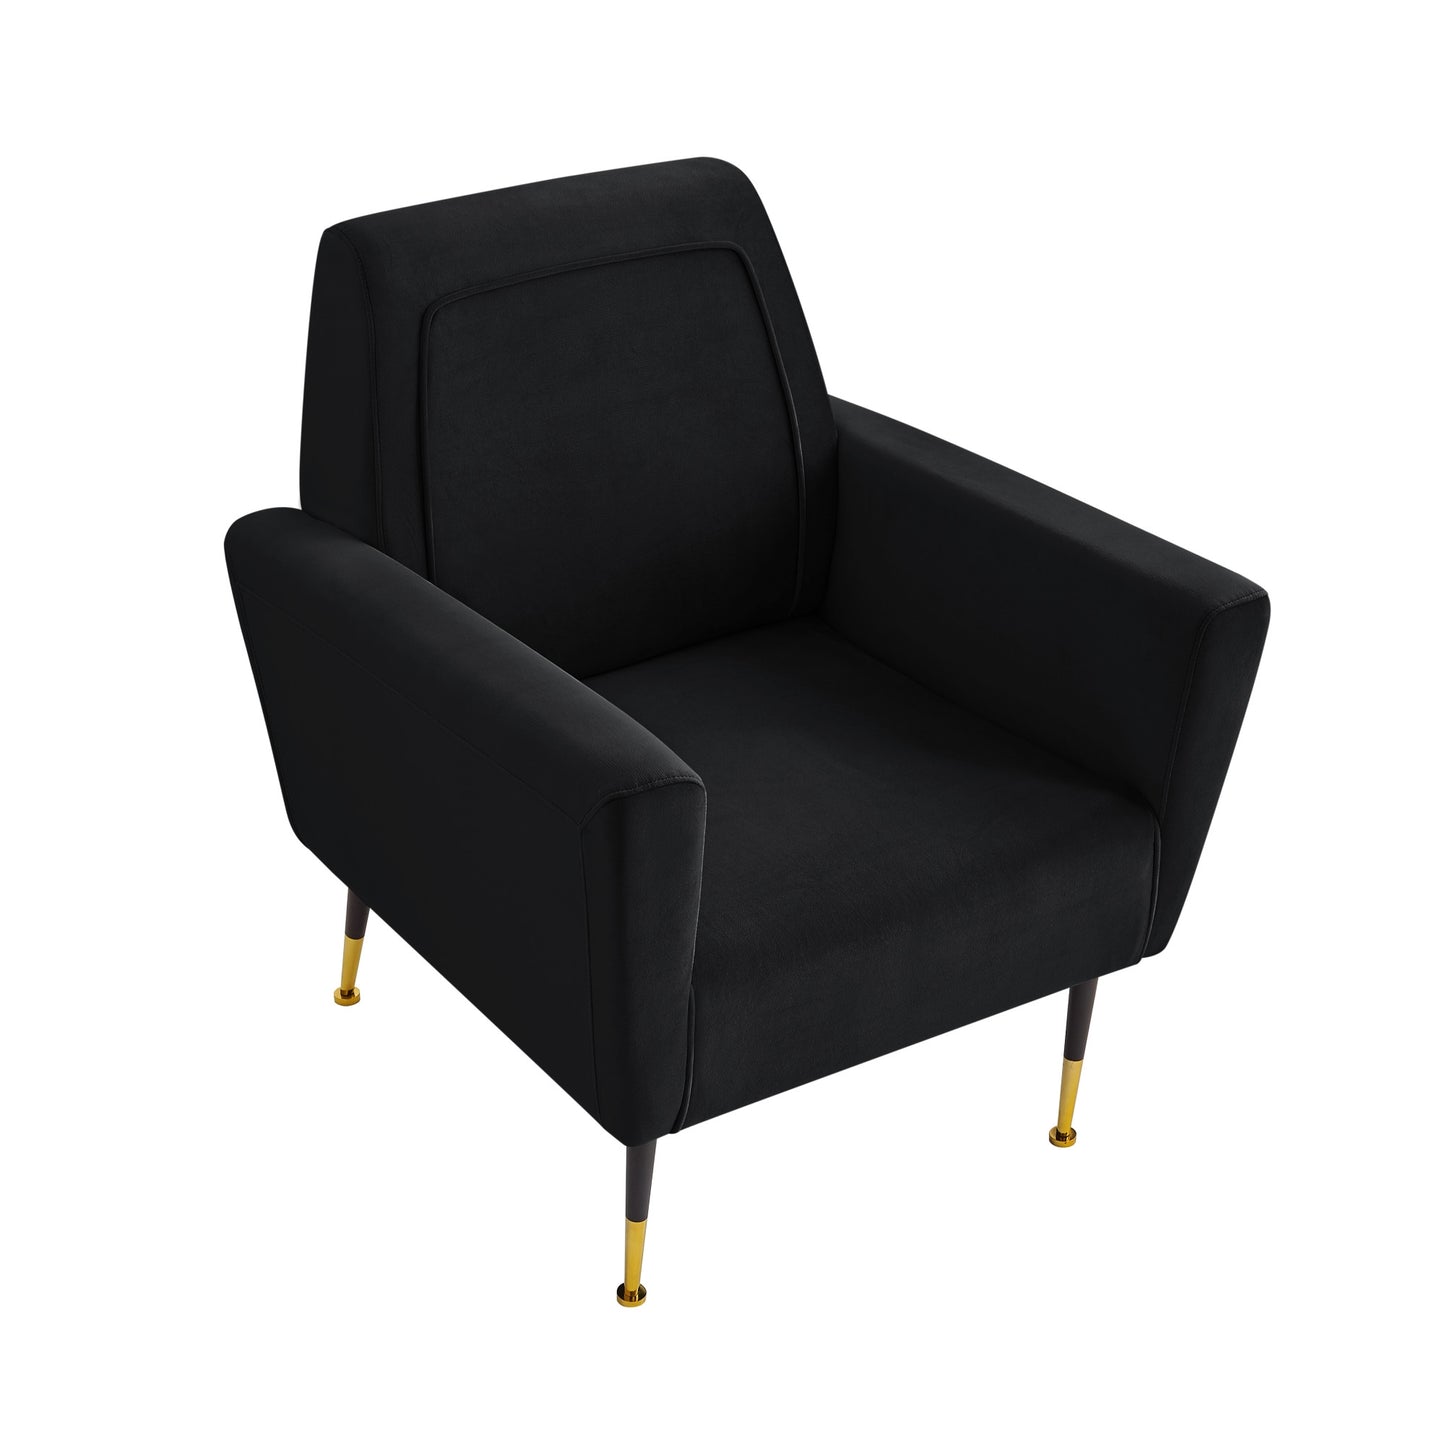 32" Black And Gold Velvet Arm Chair